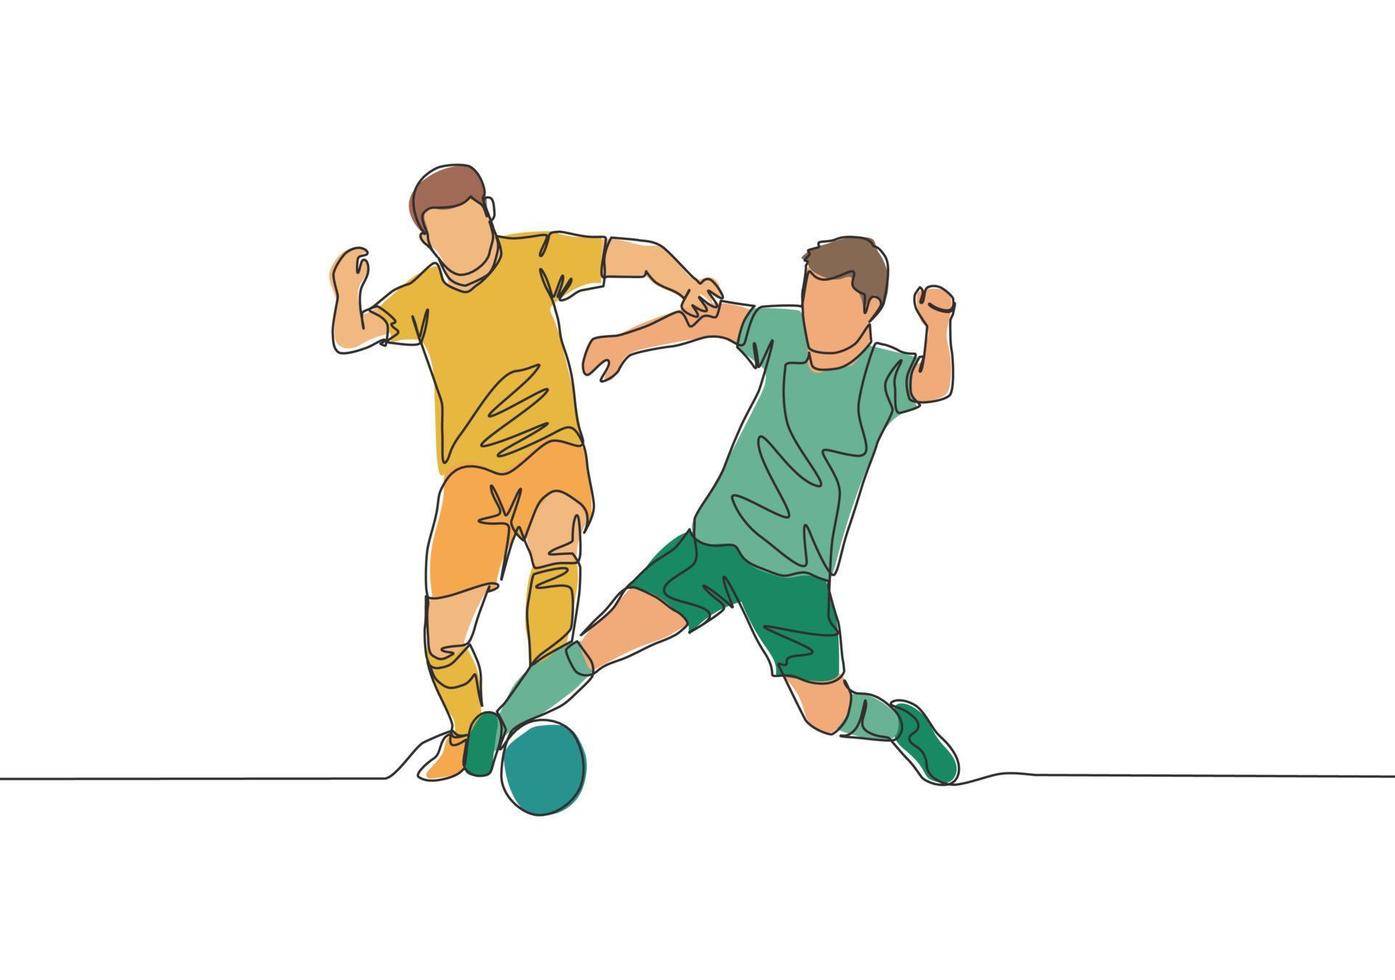 soltero continuo línea dibujo de dos fútbol americano jugadores luchando para el pelota a el juego. fútbol partido Deportes concepto. uno línea dibujar diseño vector ilustración